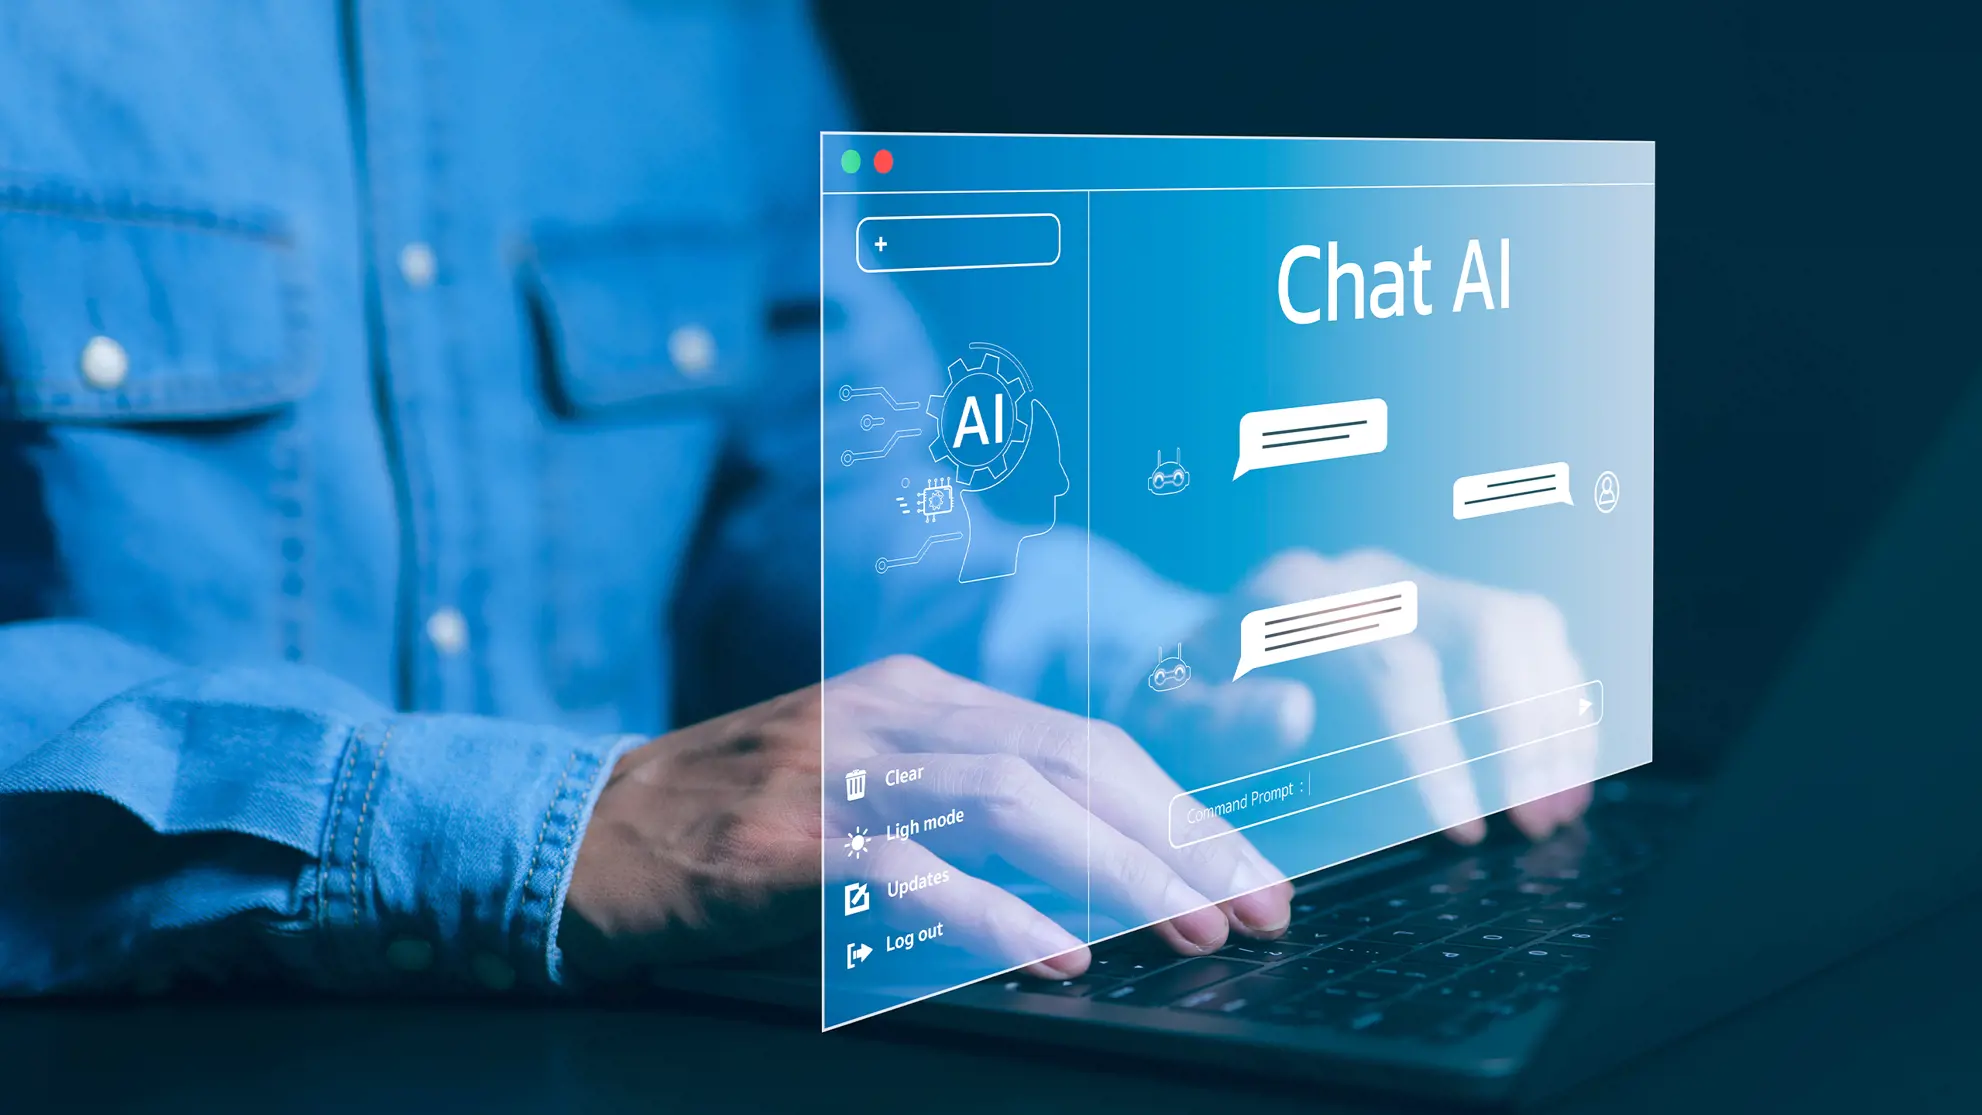 Mann am Lapto stellt Fragen an Chat AI via Prompts